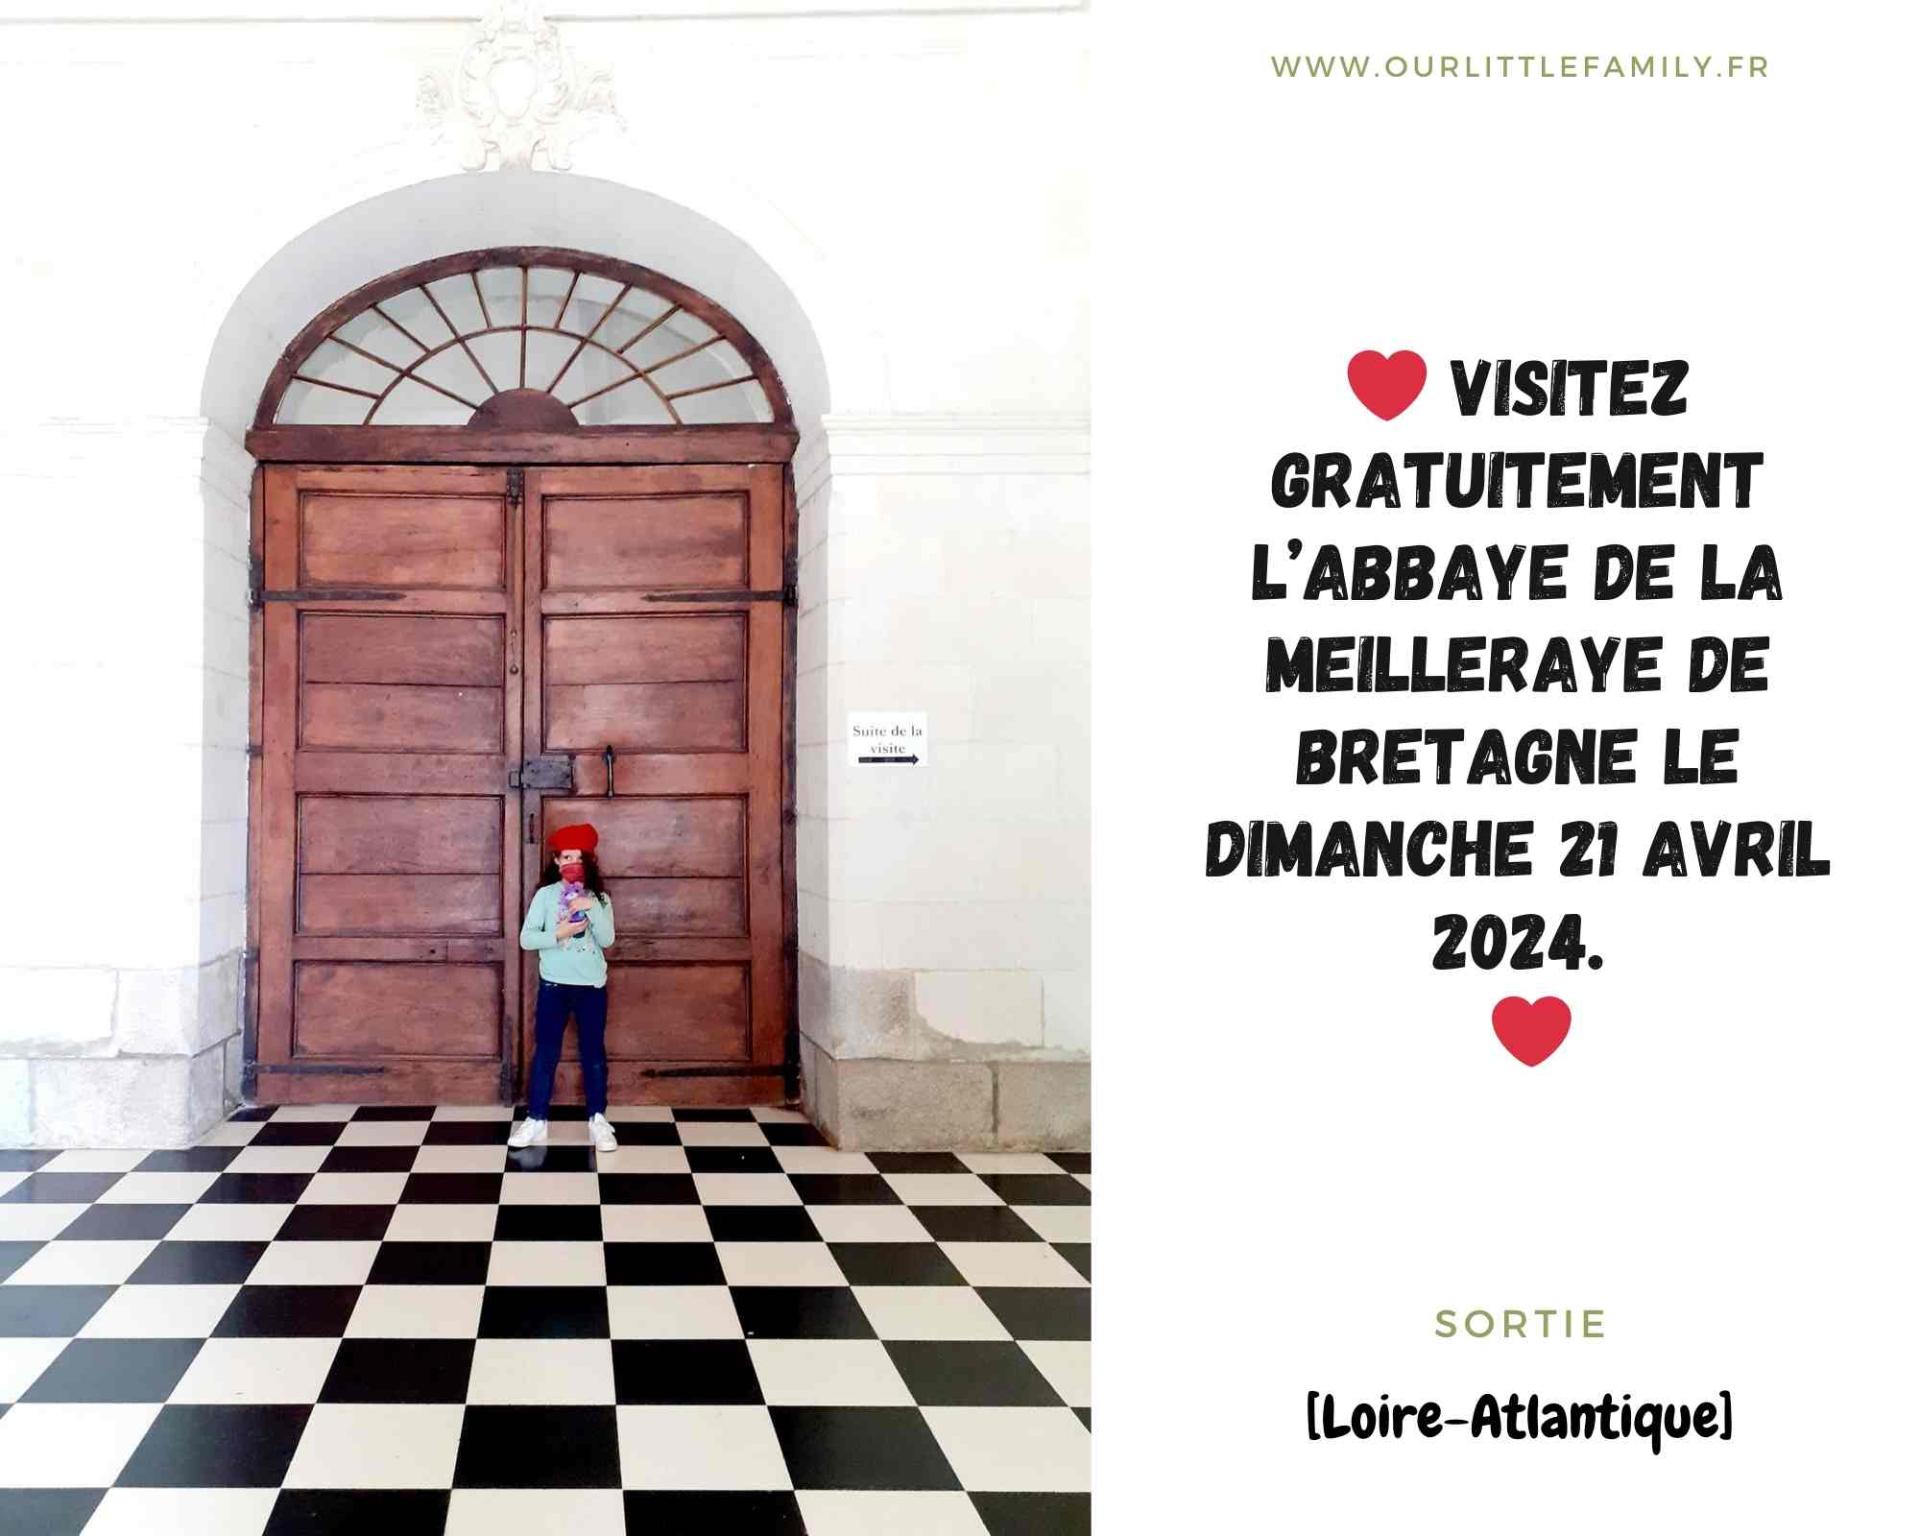 Visitez gratuitement l abbaye de la meilleraye de bretagne le samedi 21 avril 2024 1